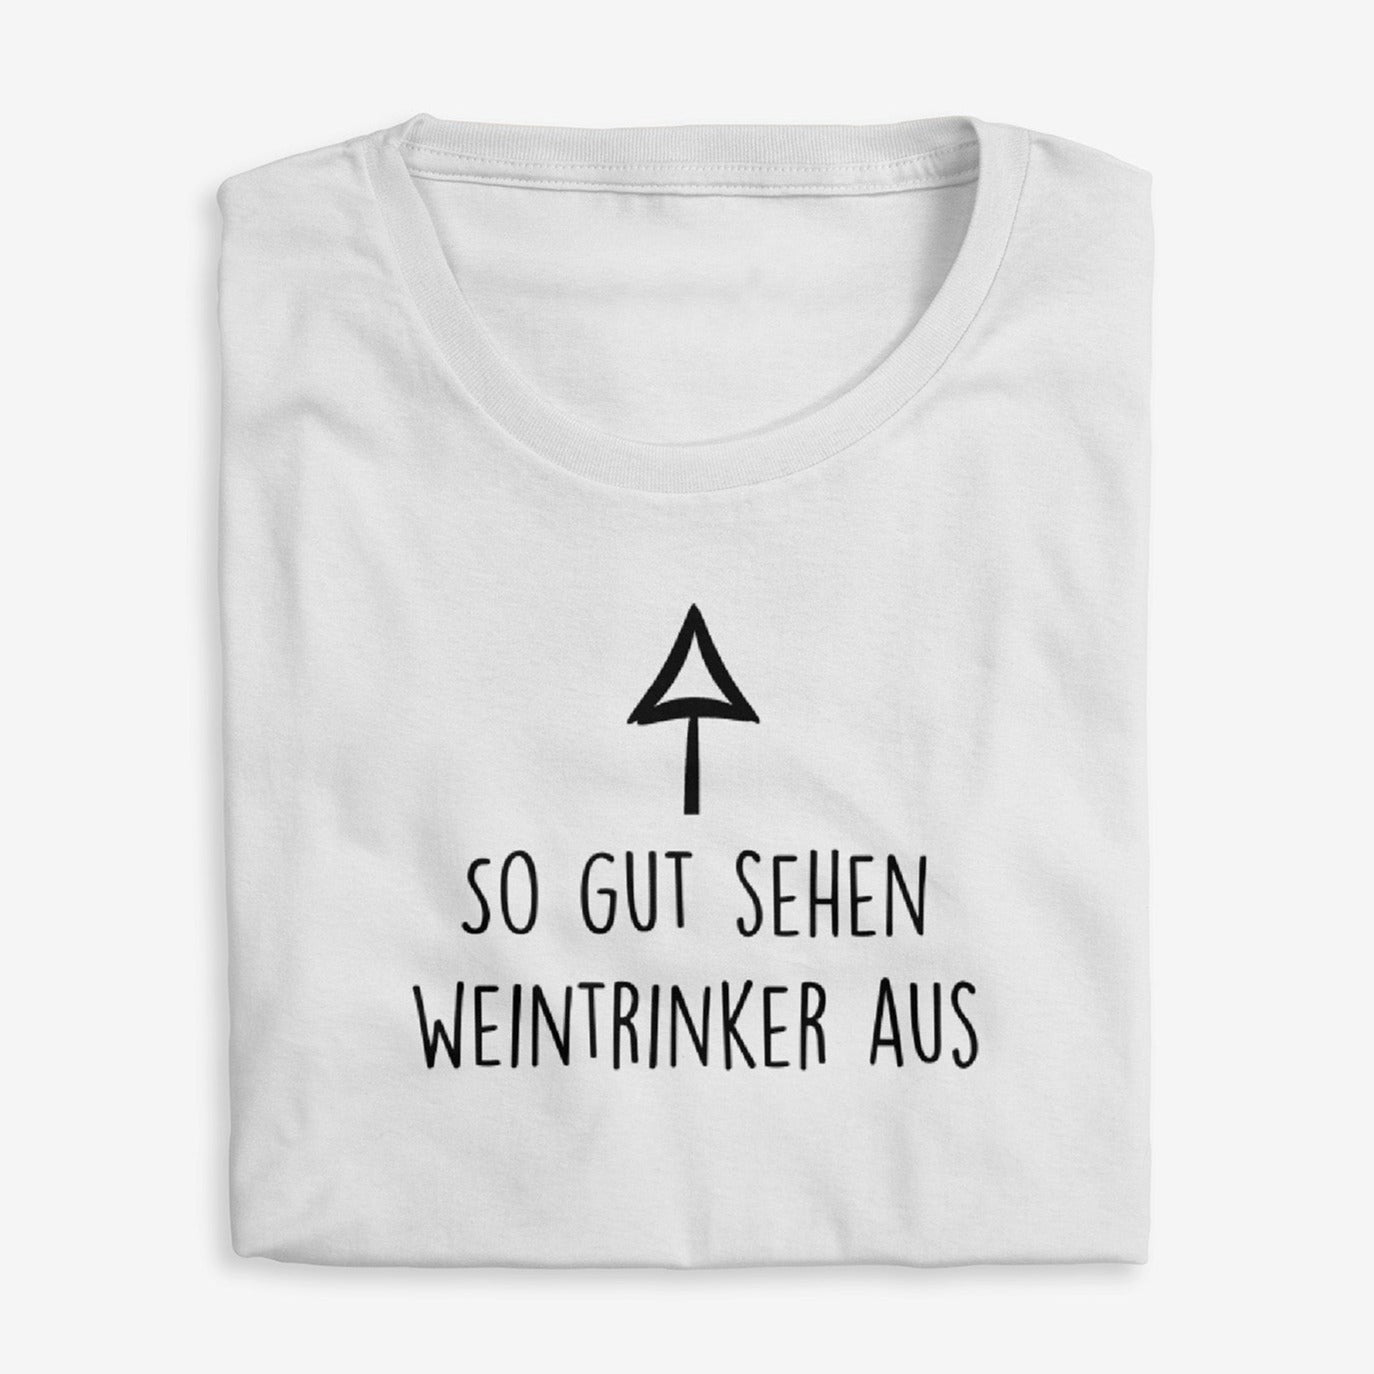 AUSSEHEN - Premium Shirt Herren